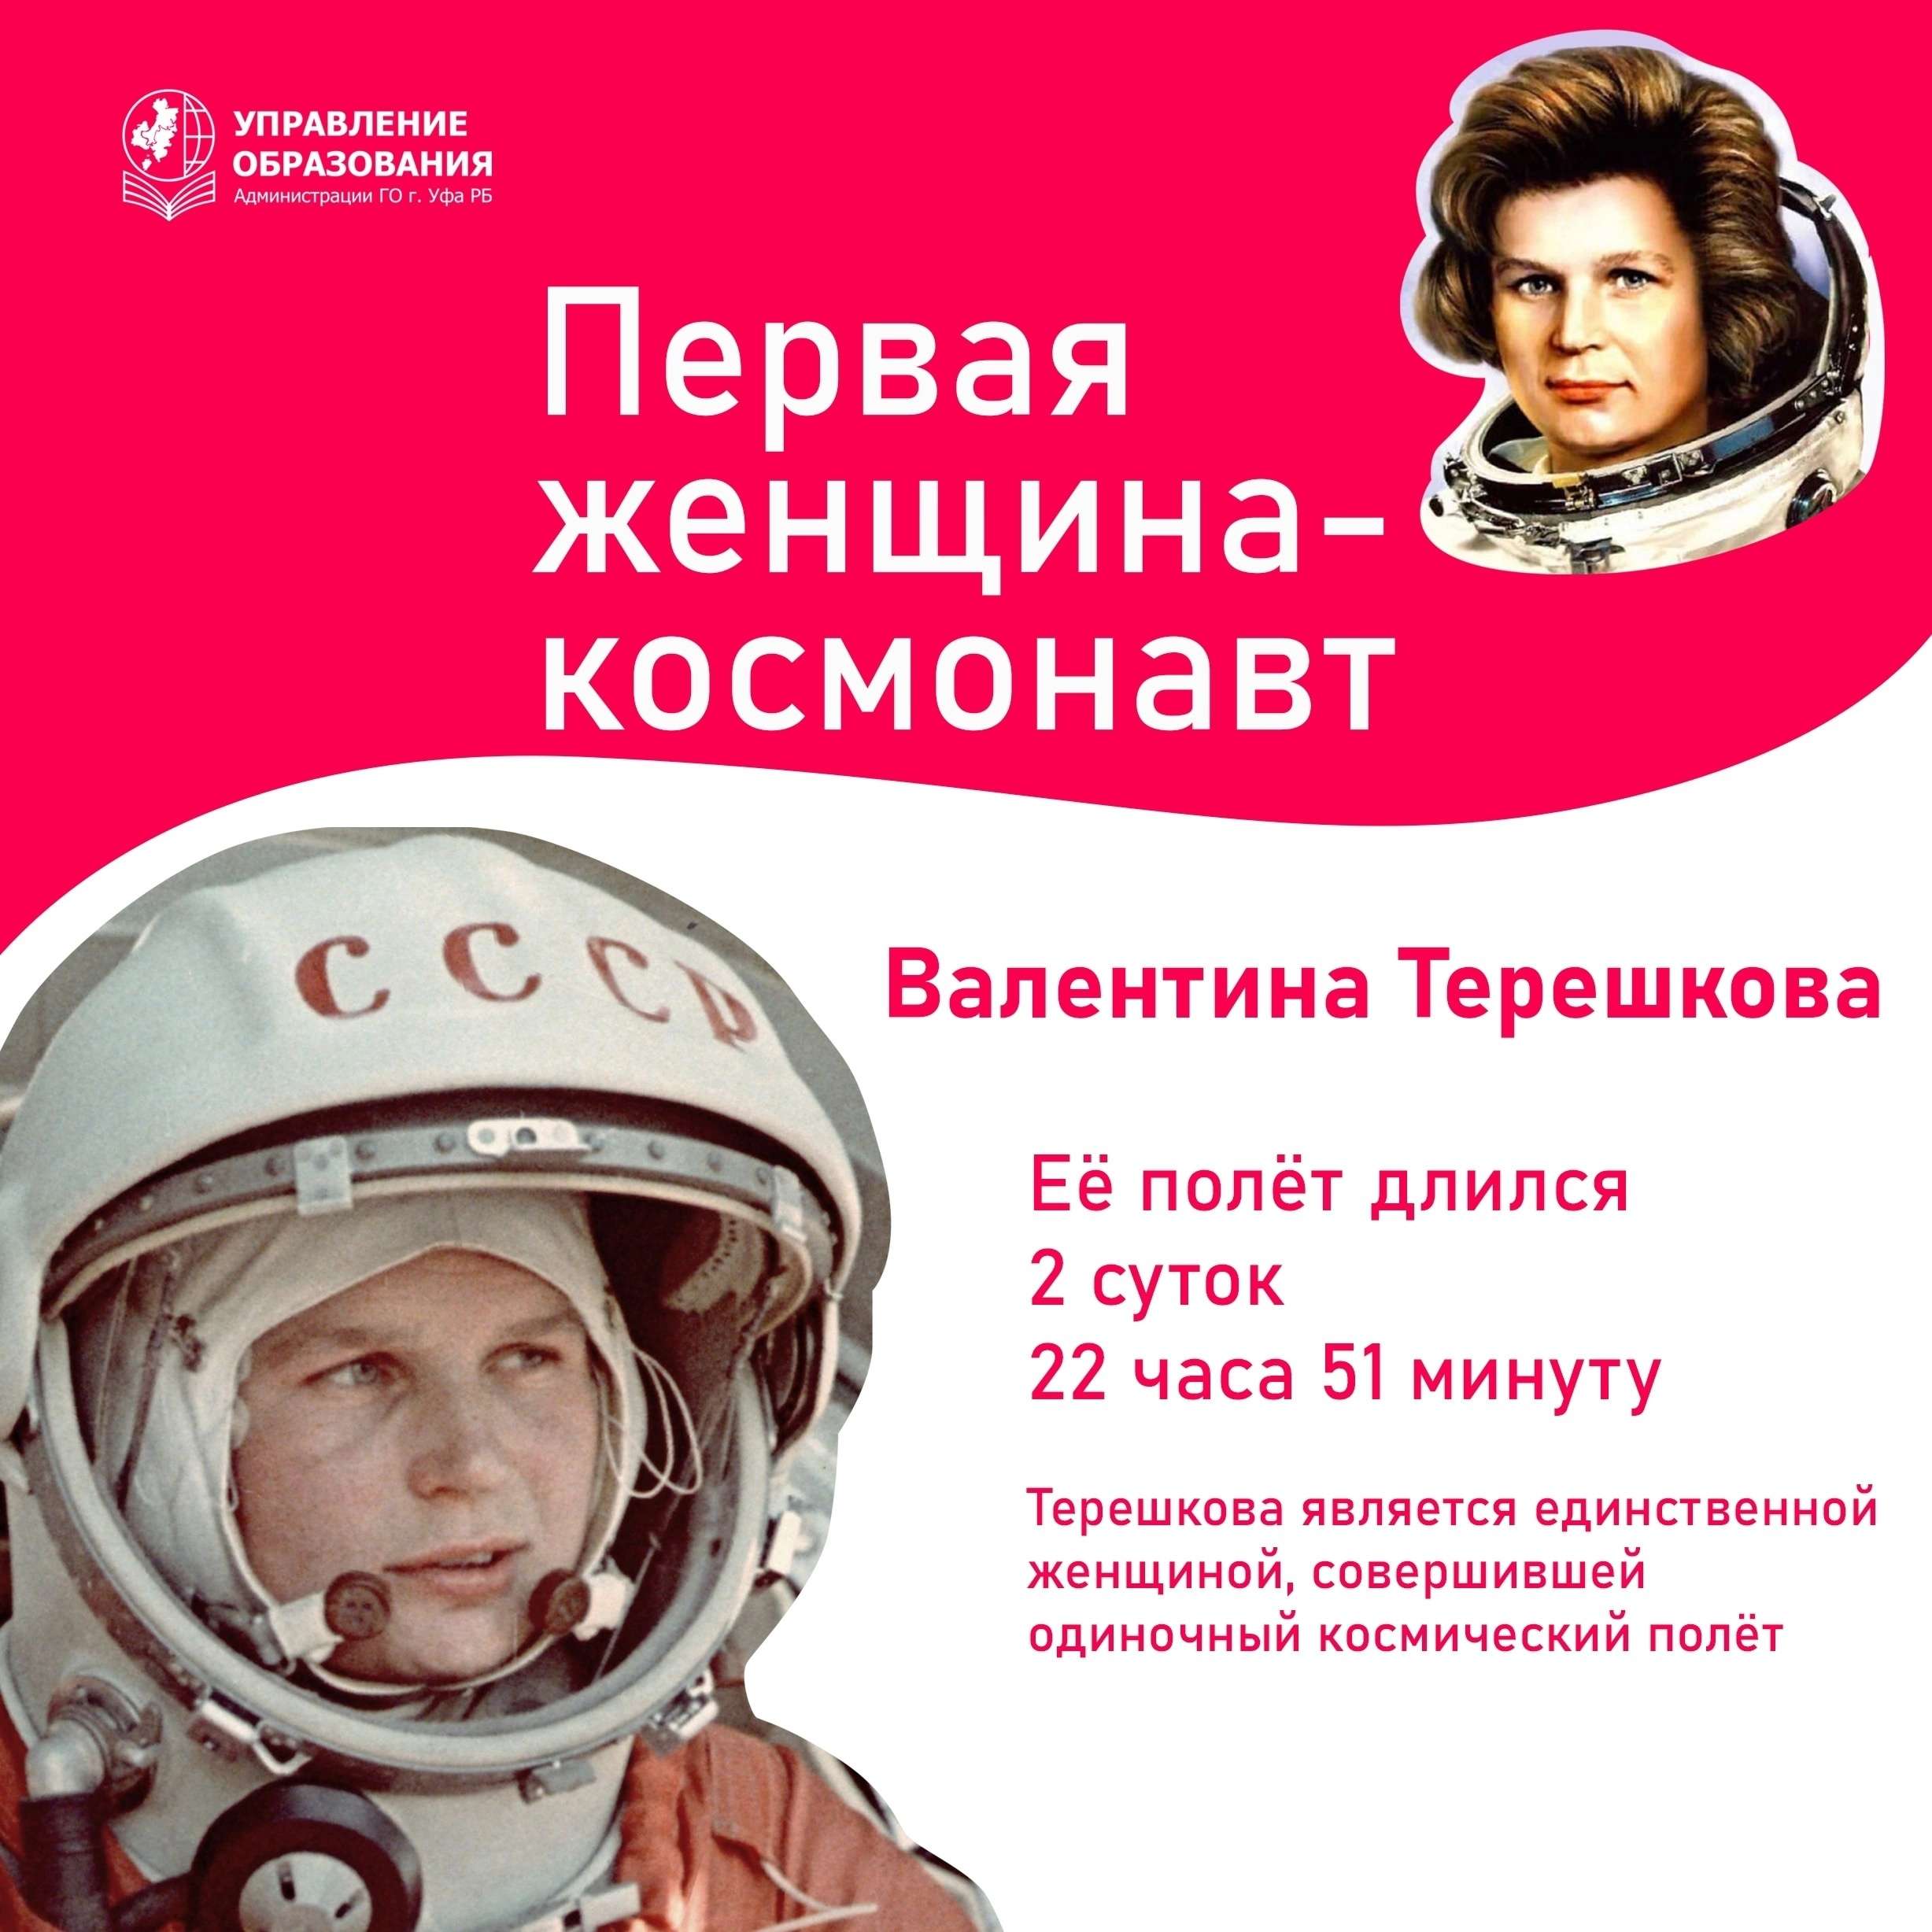 Поздравляем всех с днём космонавтики